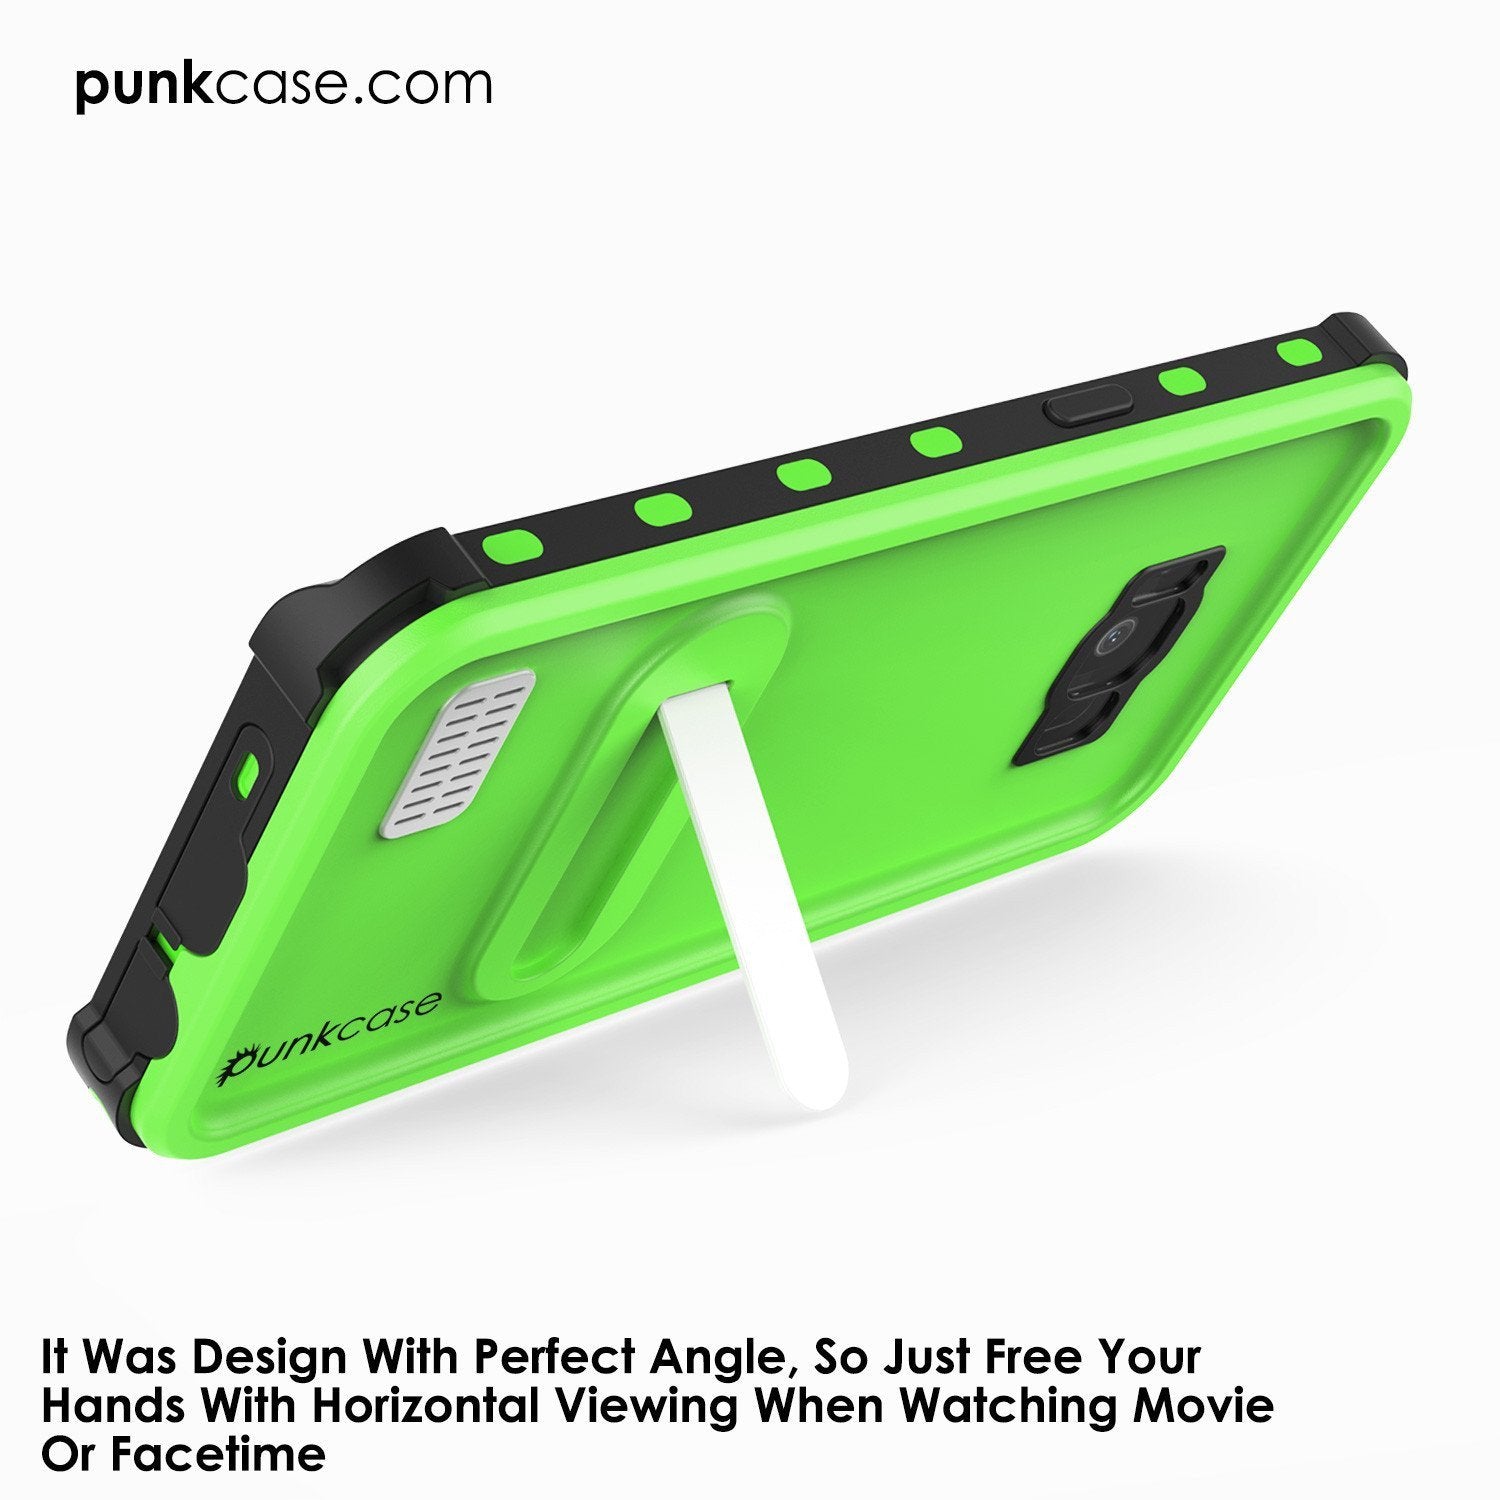 Galaxy S8 Punkcase KickStud Series W/Built-In Kickstand Case, Green